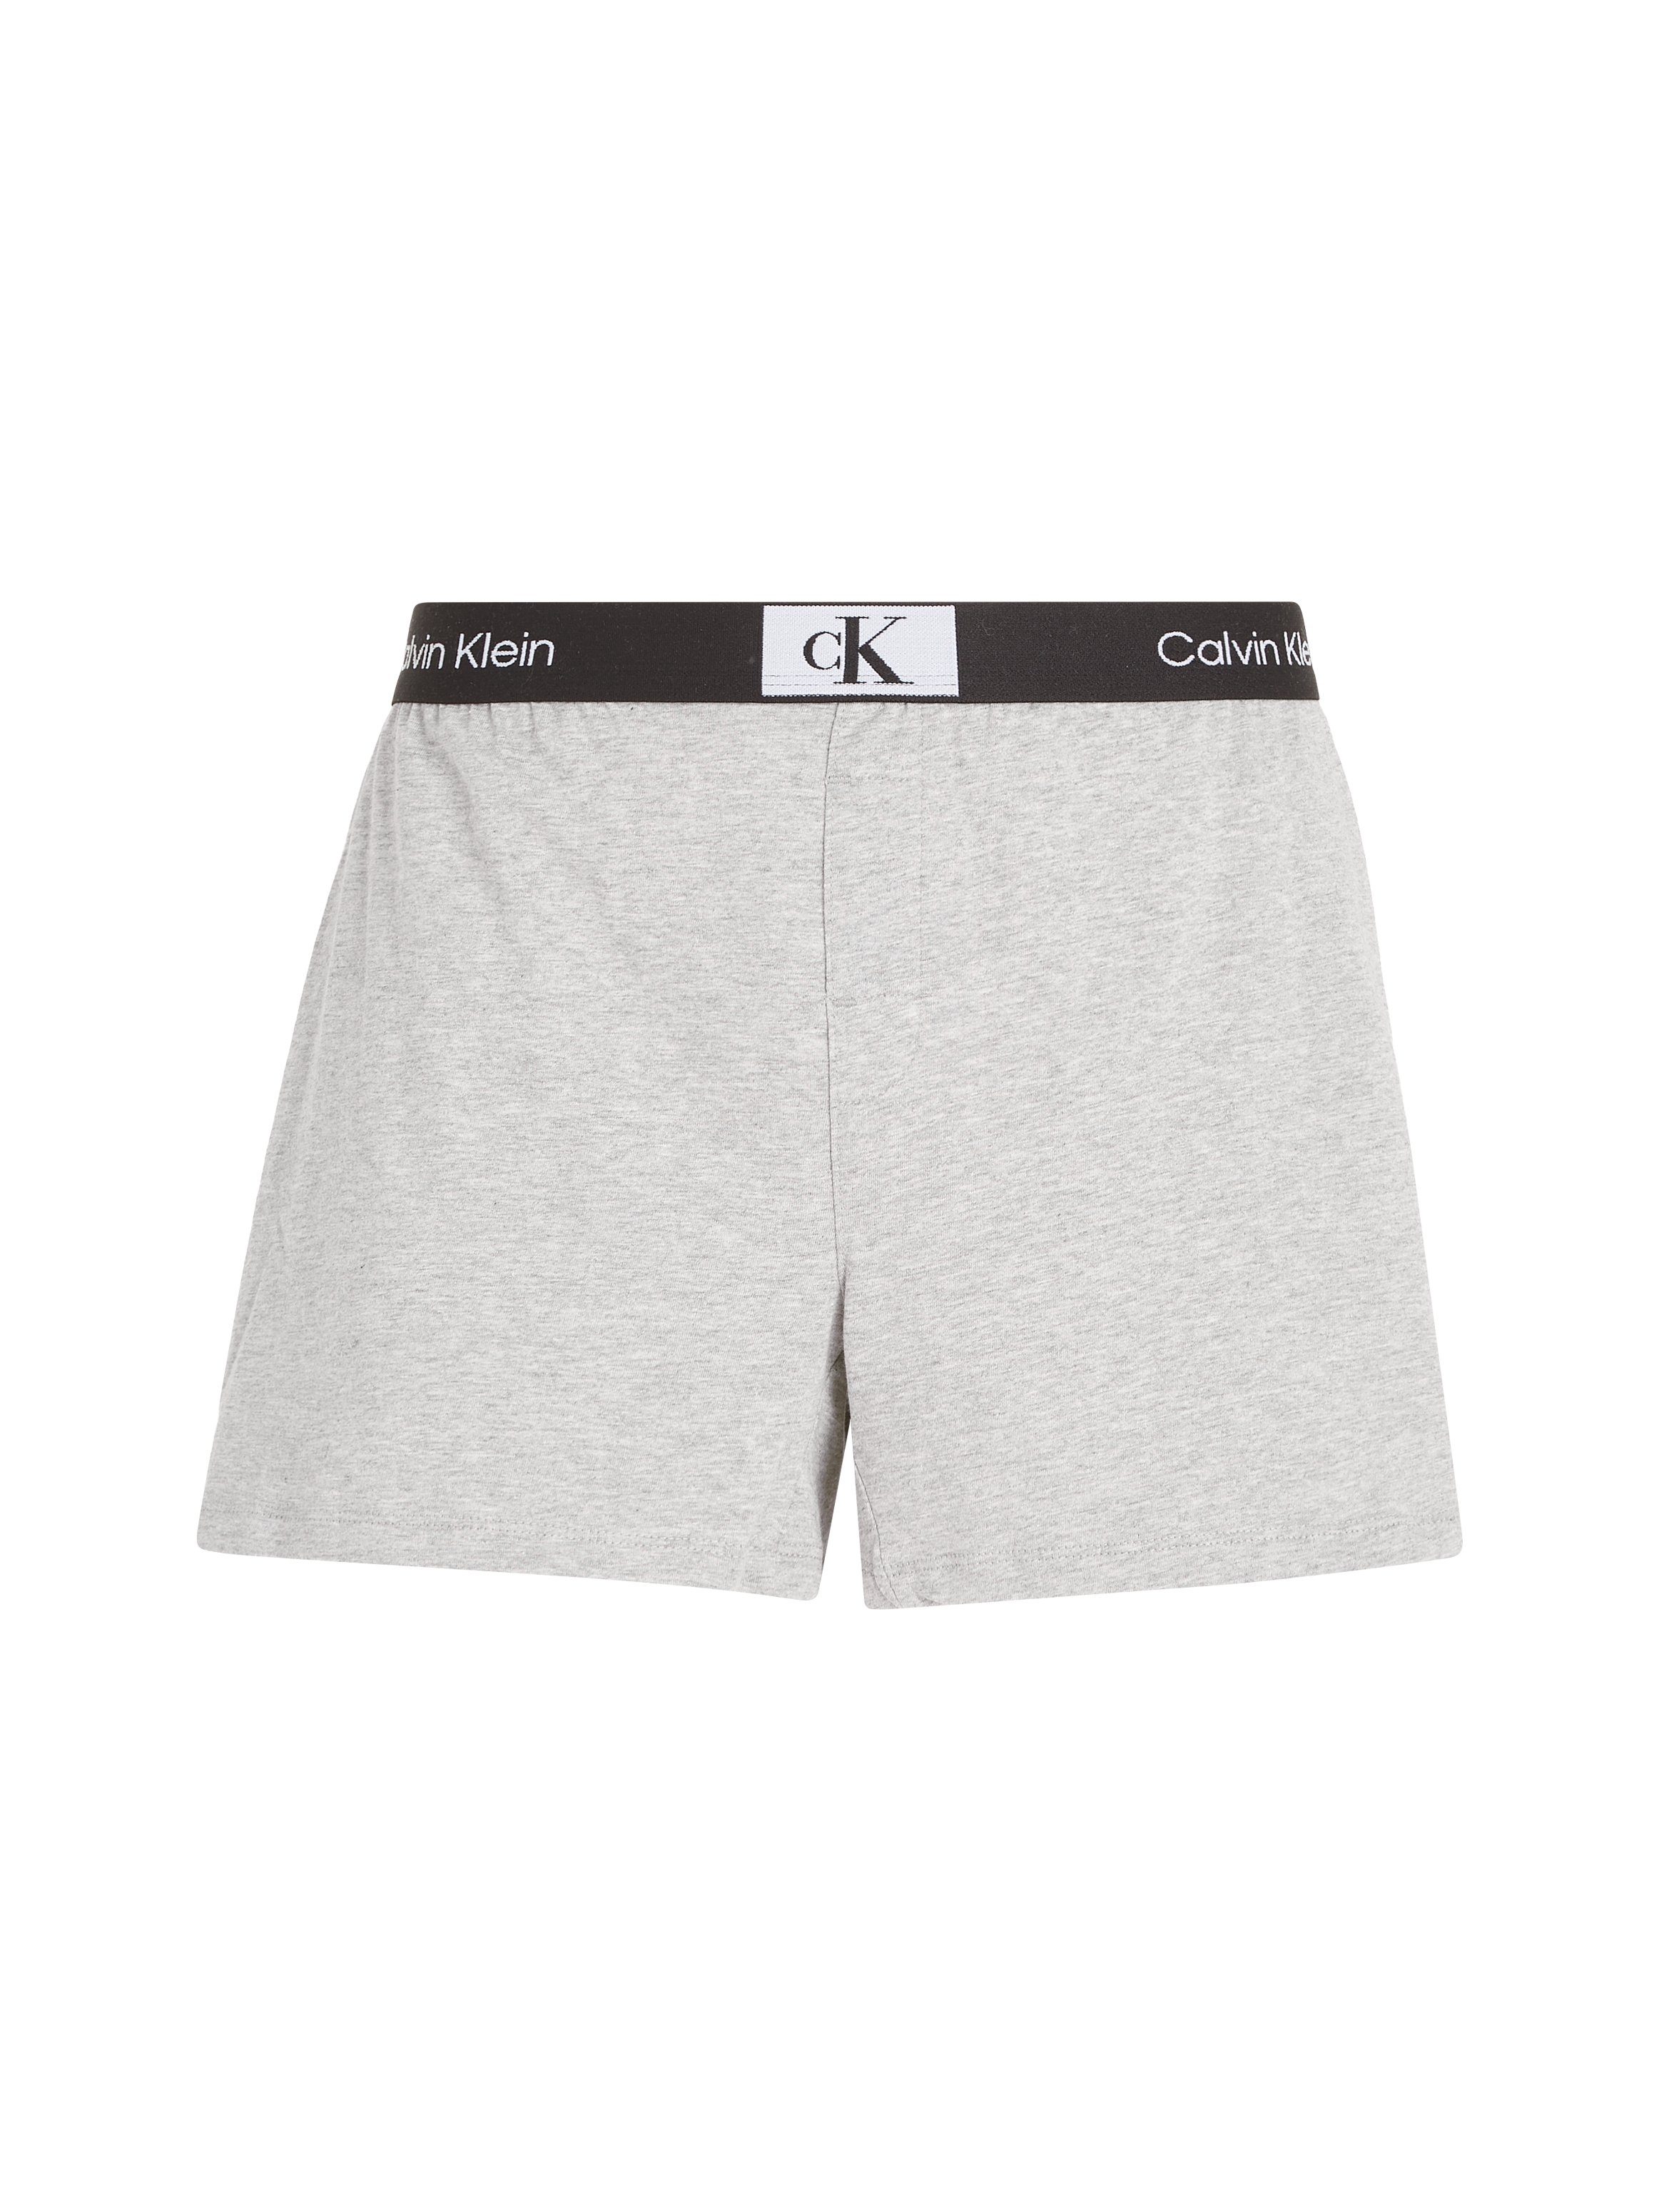 Calvin Klein Underwear Schlafshorts Logobund SLEEP klassischem mit SHORT GREY-HEATHER